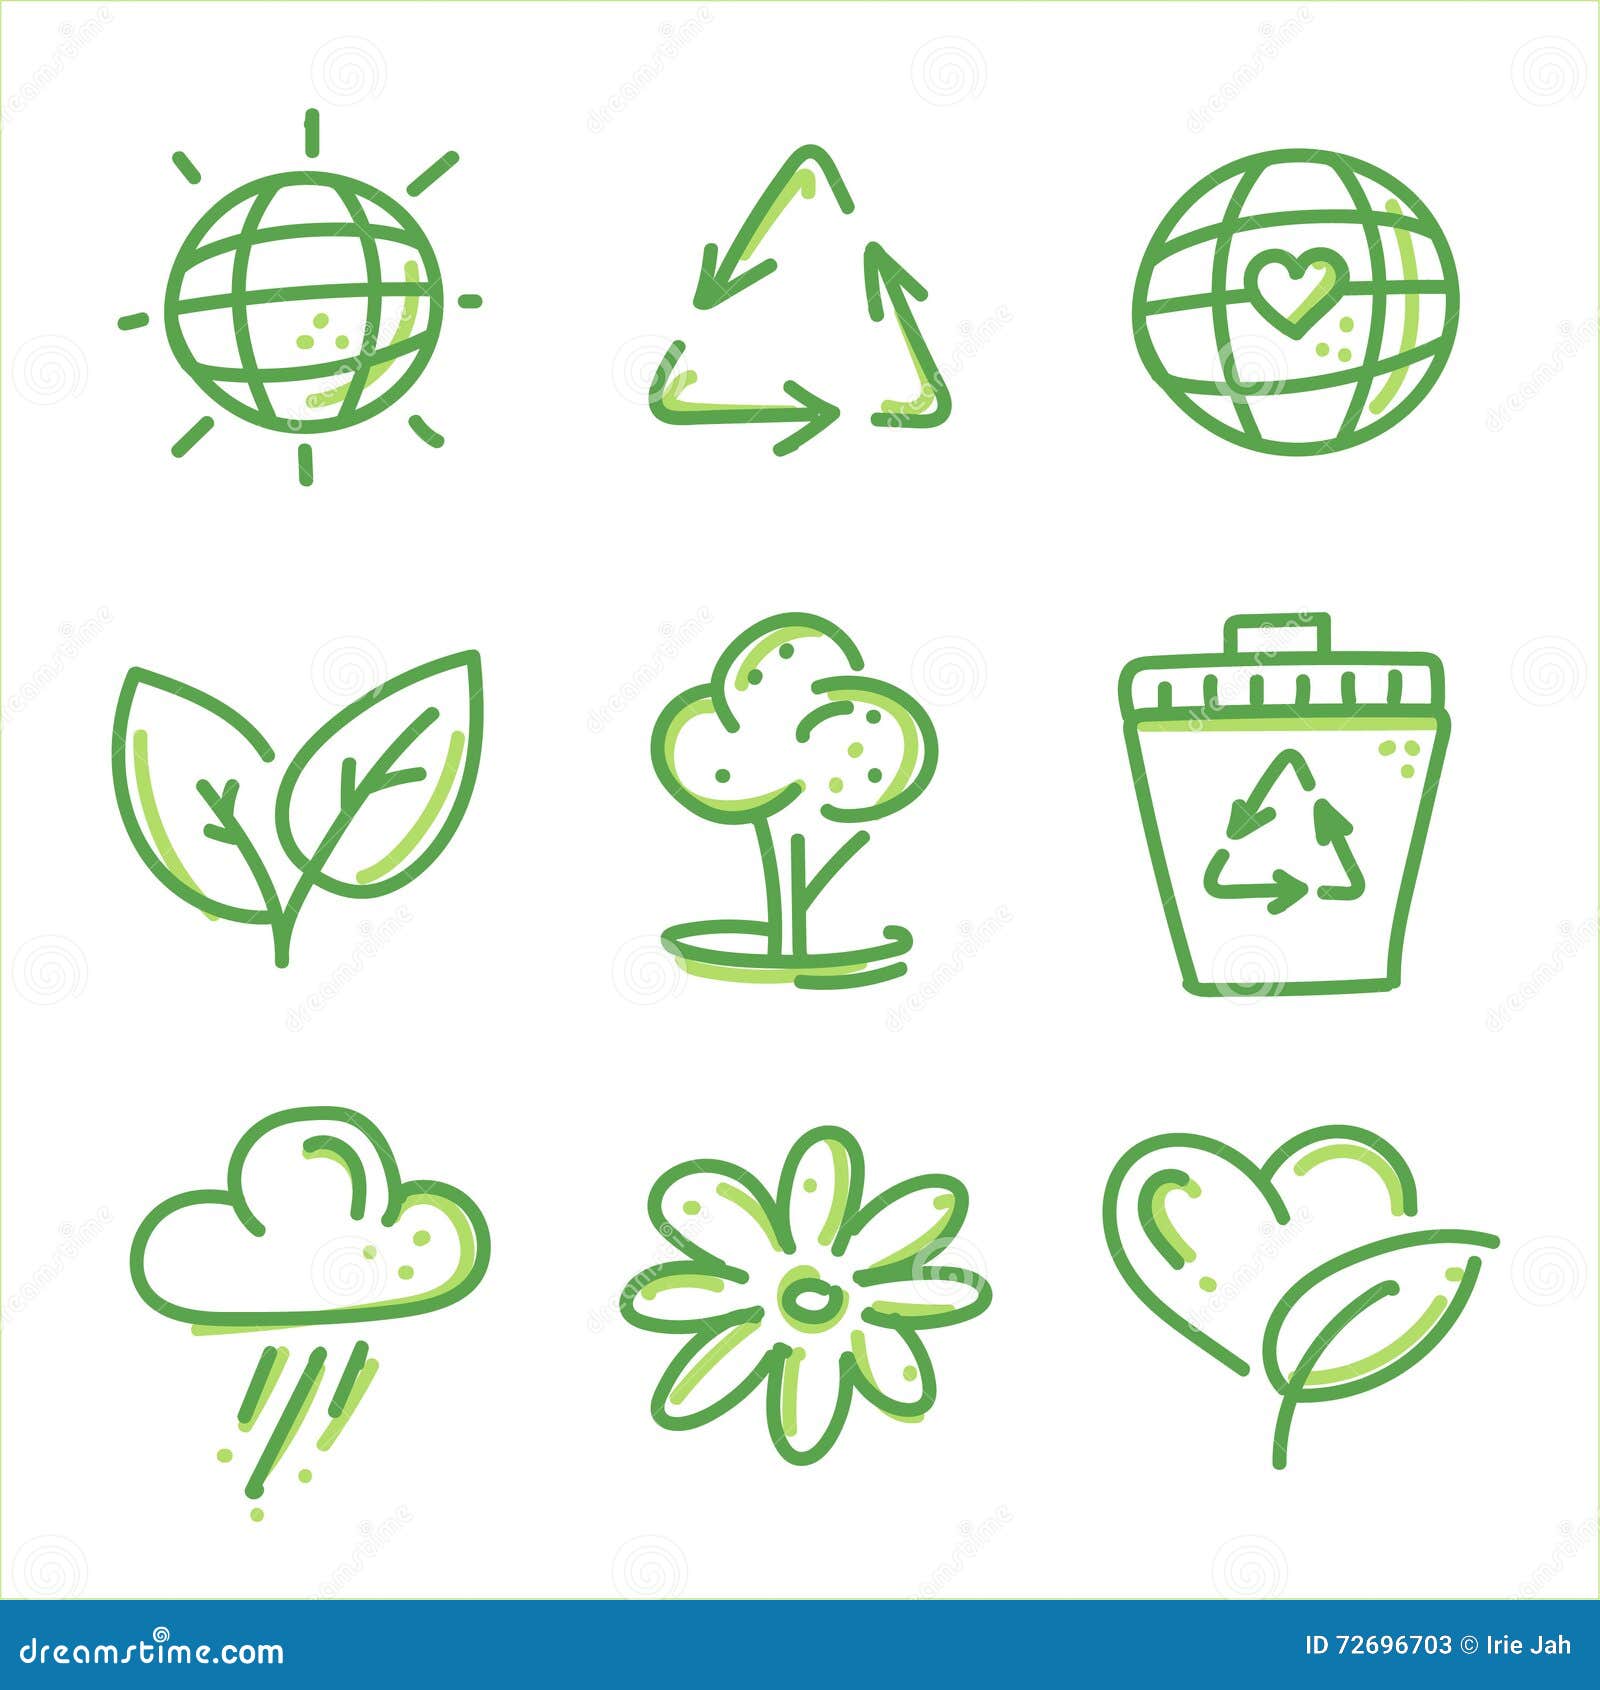 eco friendly icon set